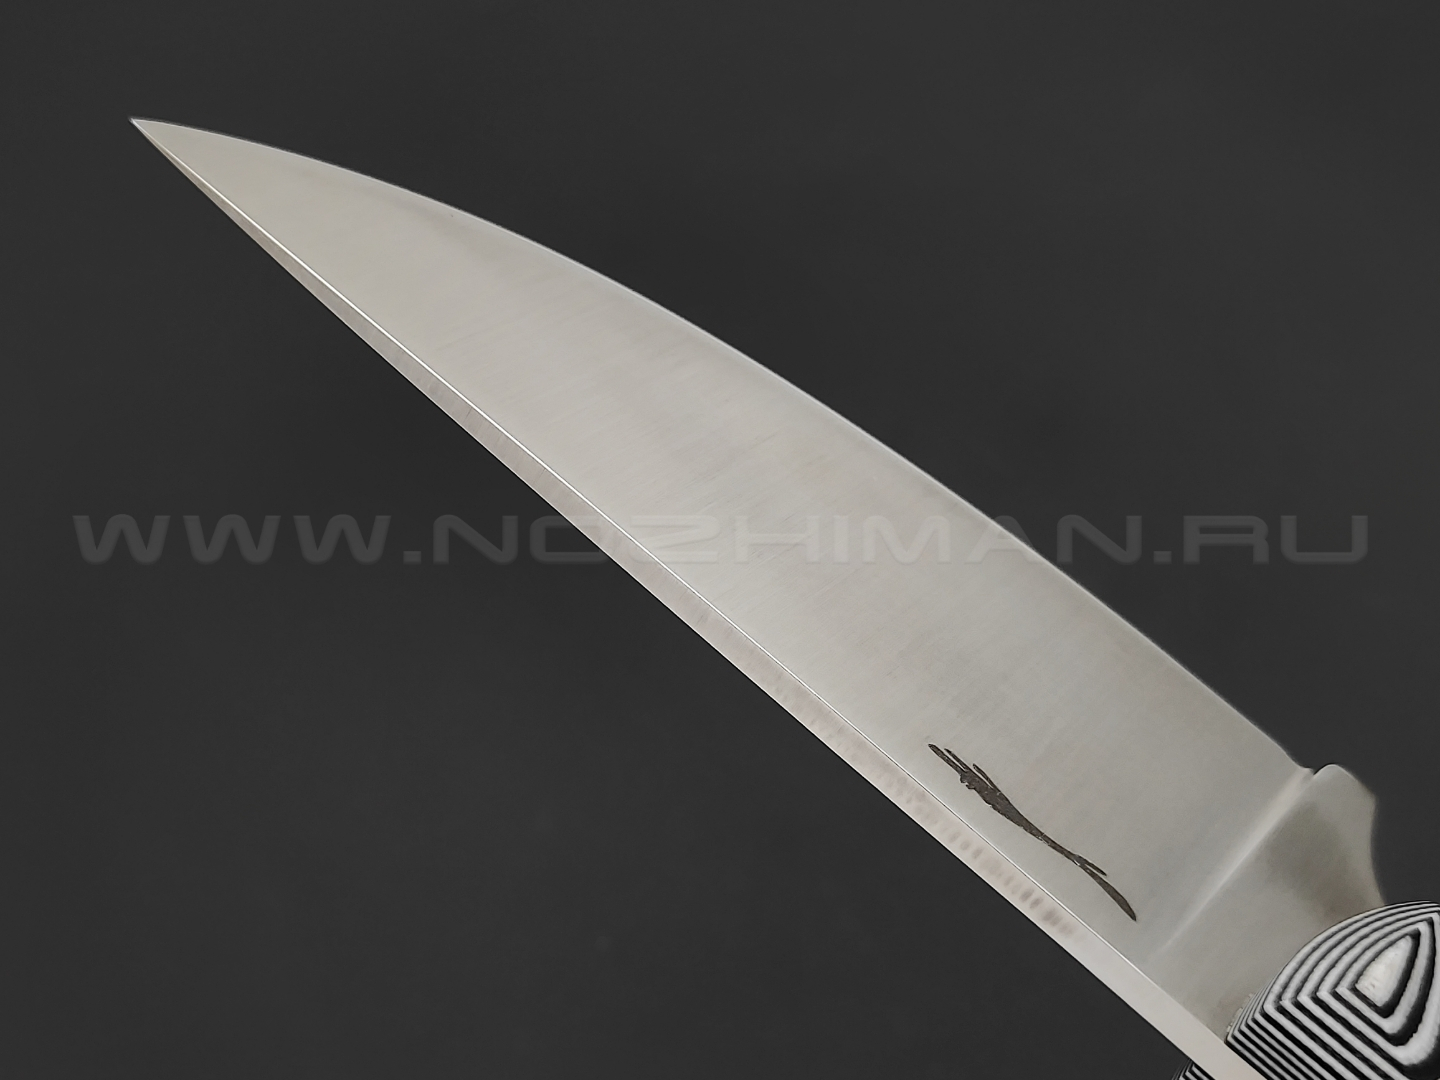 Волчий Век нож Mark-I сталь Niolox WA, рукоять черно-белая G10